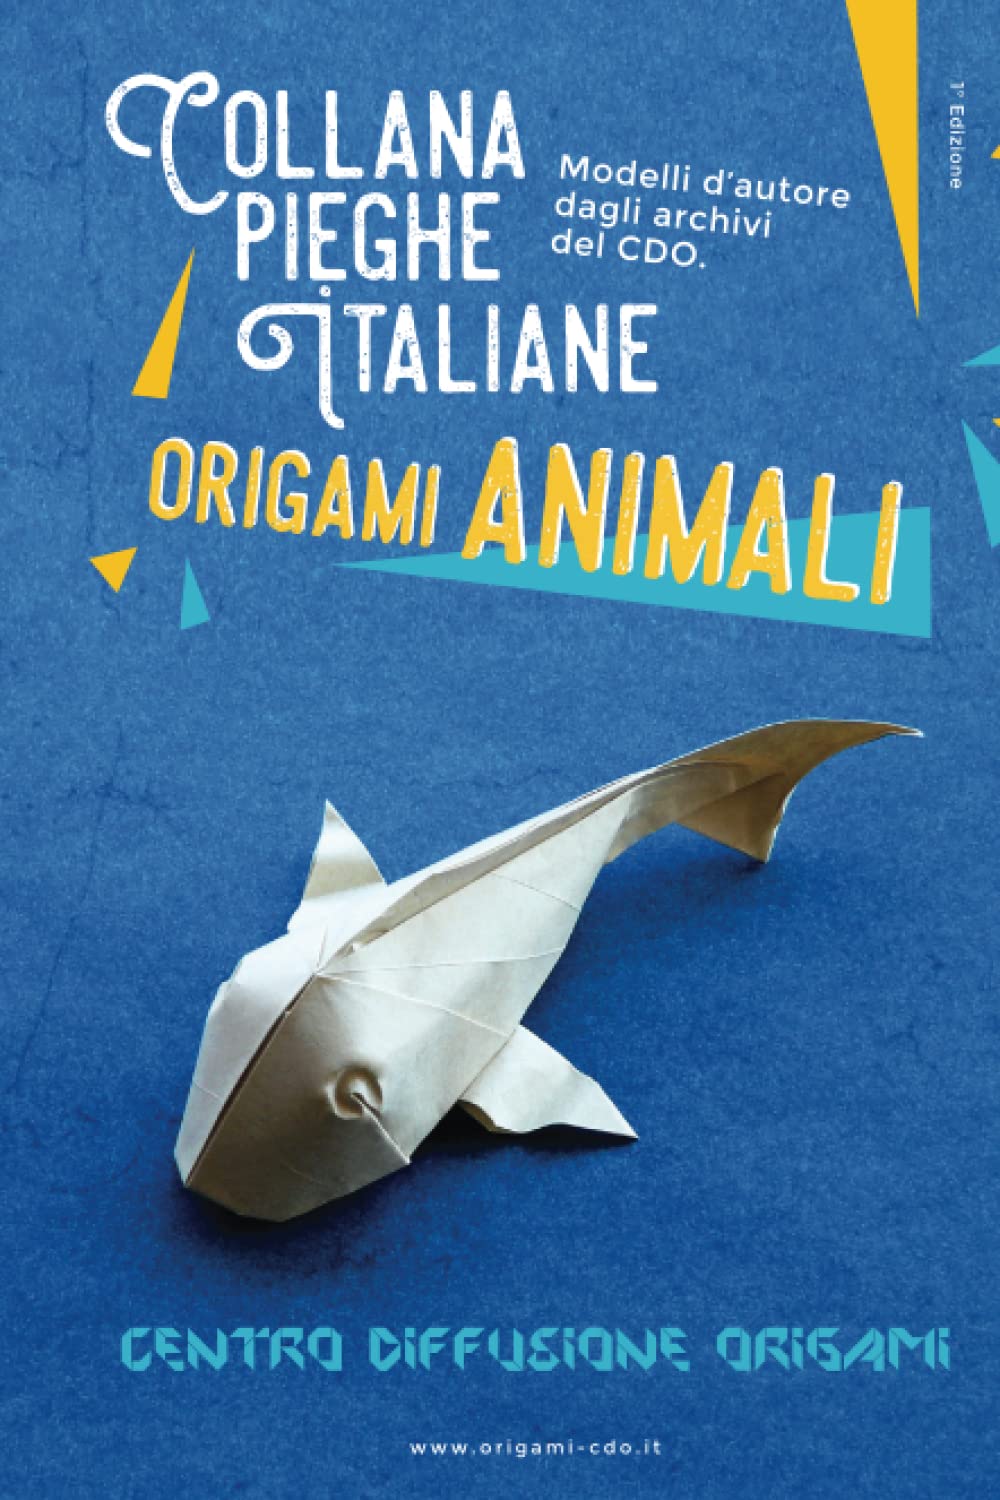 Collana pieghe Italiane - origami ANIMALI : page 152.